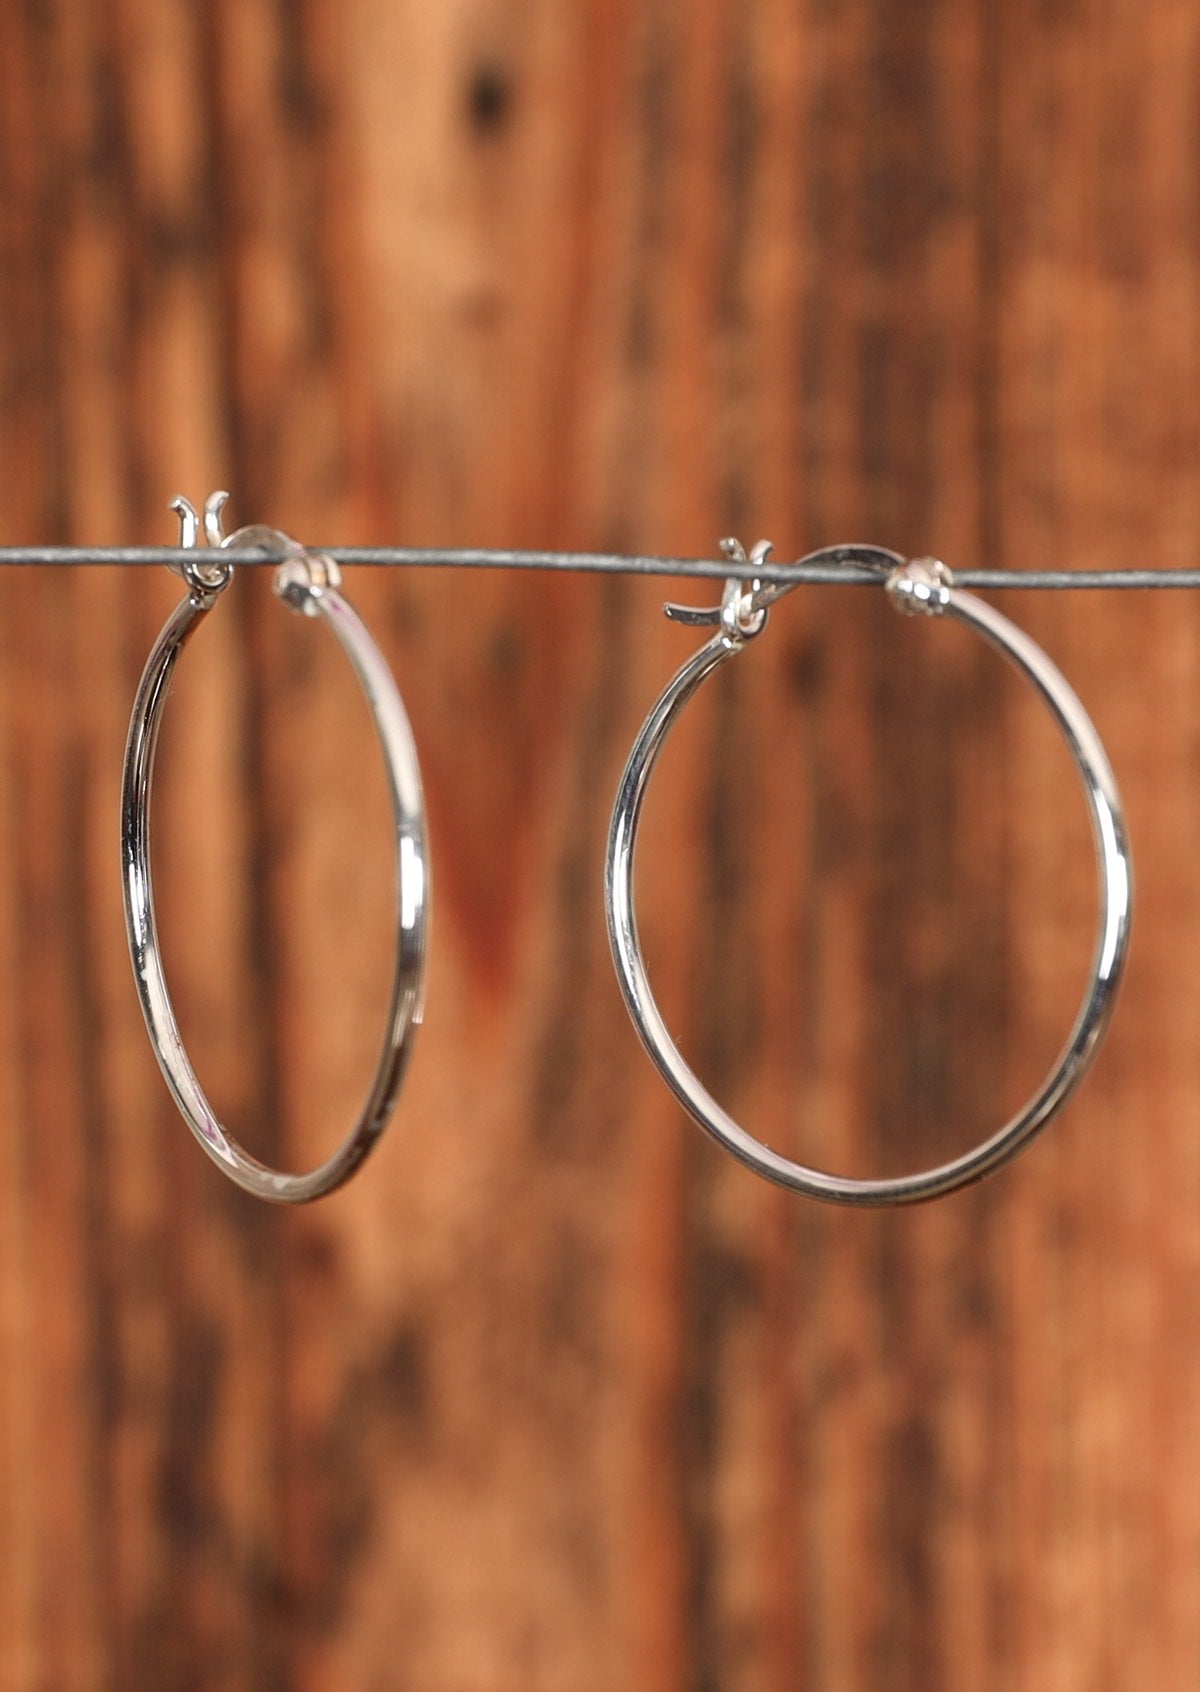 92.5% Slim Silver Hoop earrings sit on a wire for display.